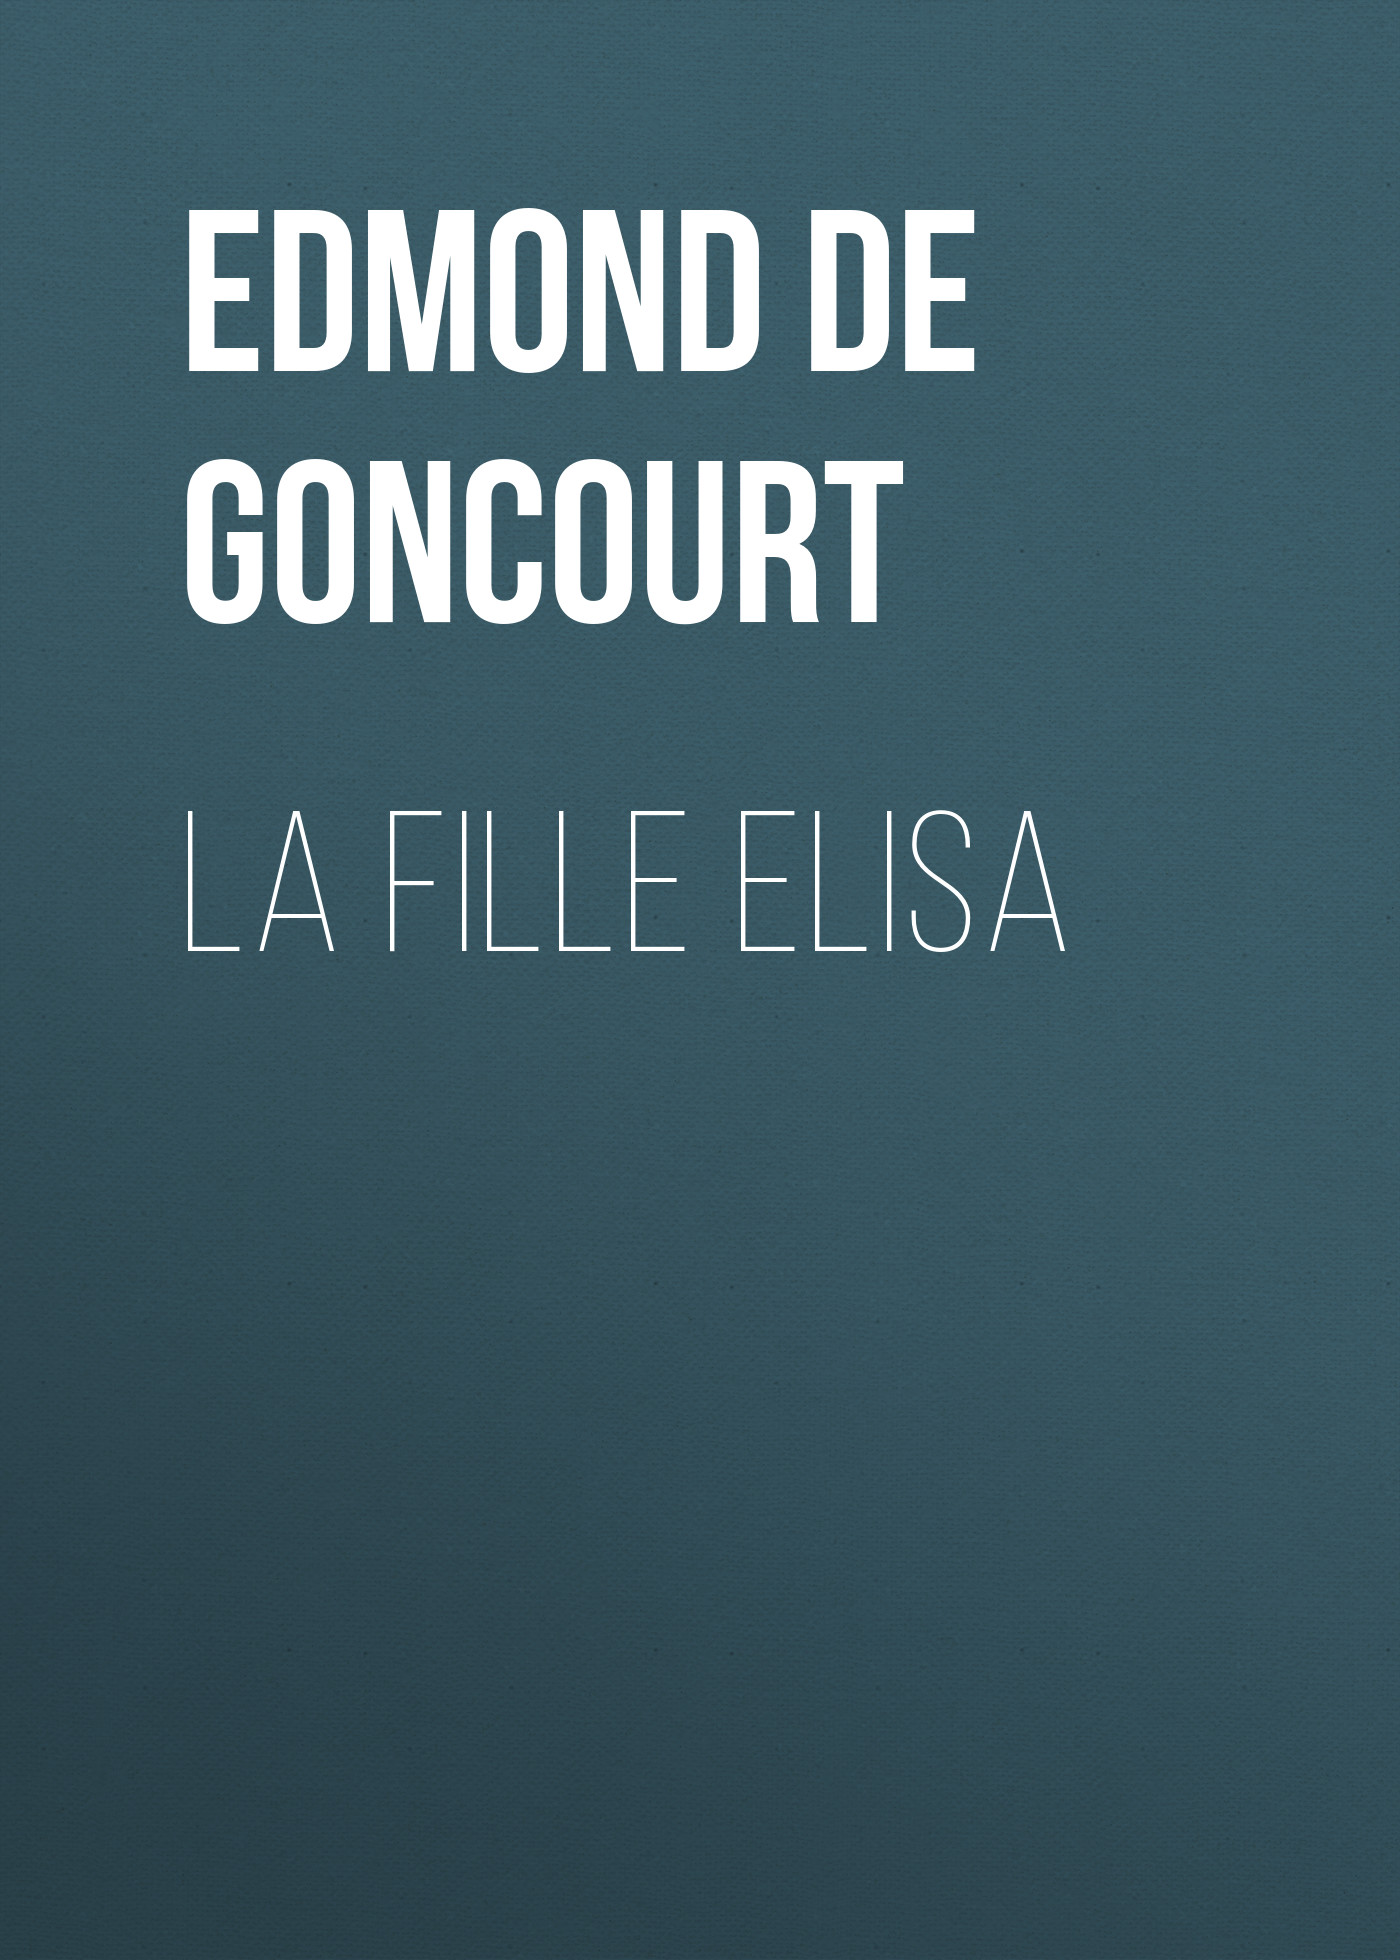 Книга La fille Elisa из серии , созданная Edmond de Goncourt, может относится к жанру Зарубежная старинная литература, Зарубежная классика. Стоимость электронной книги La fille Elisa с идентификатором 24937557 составляет 0 руб.